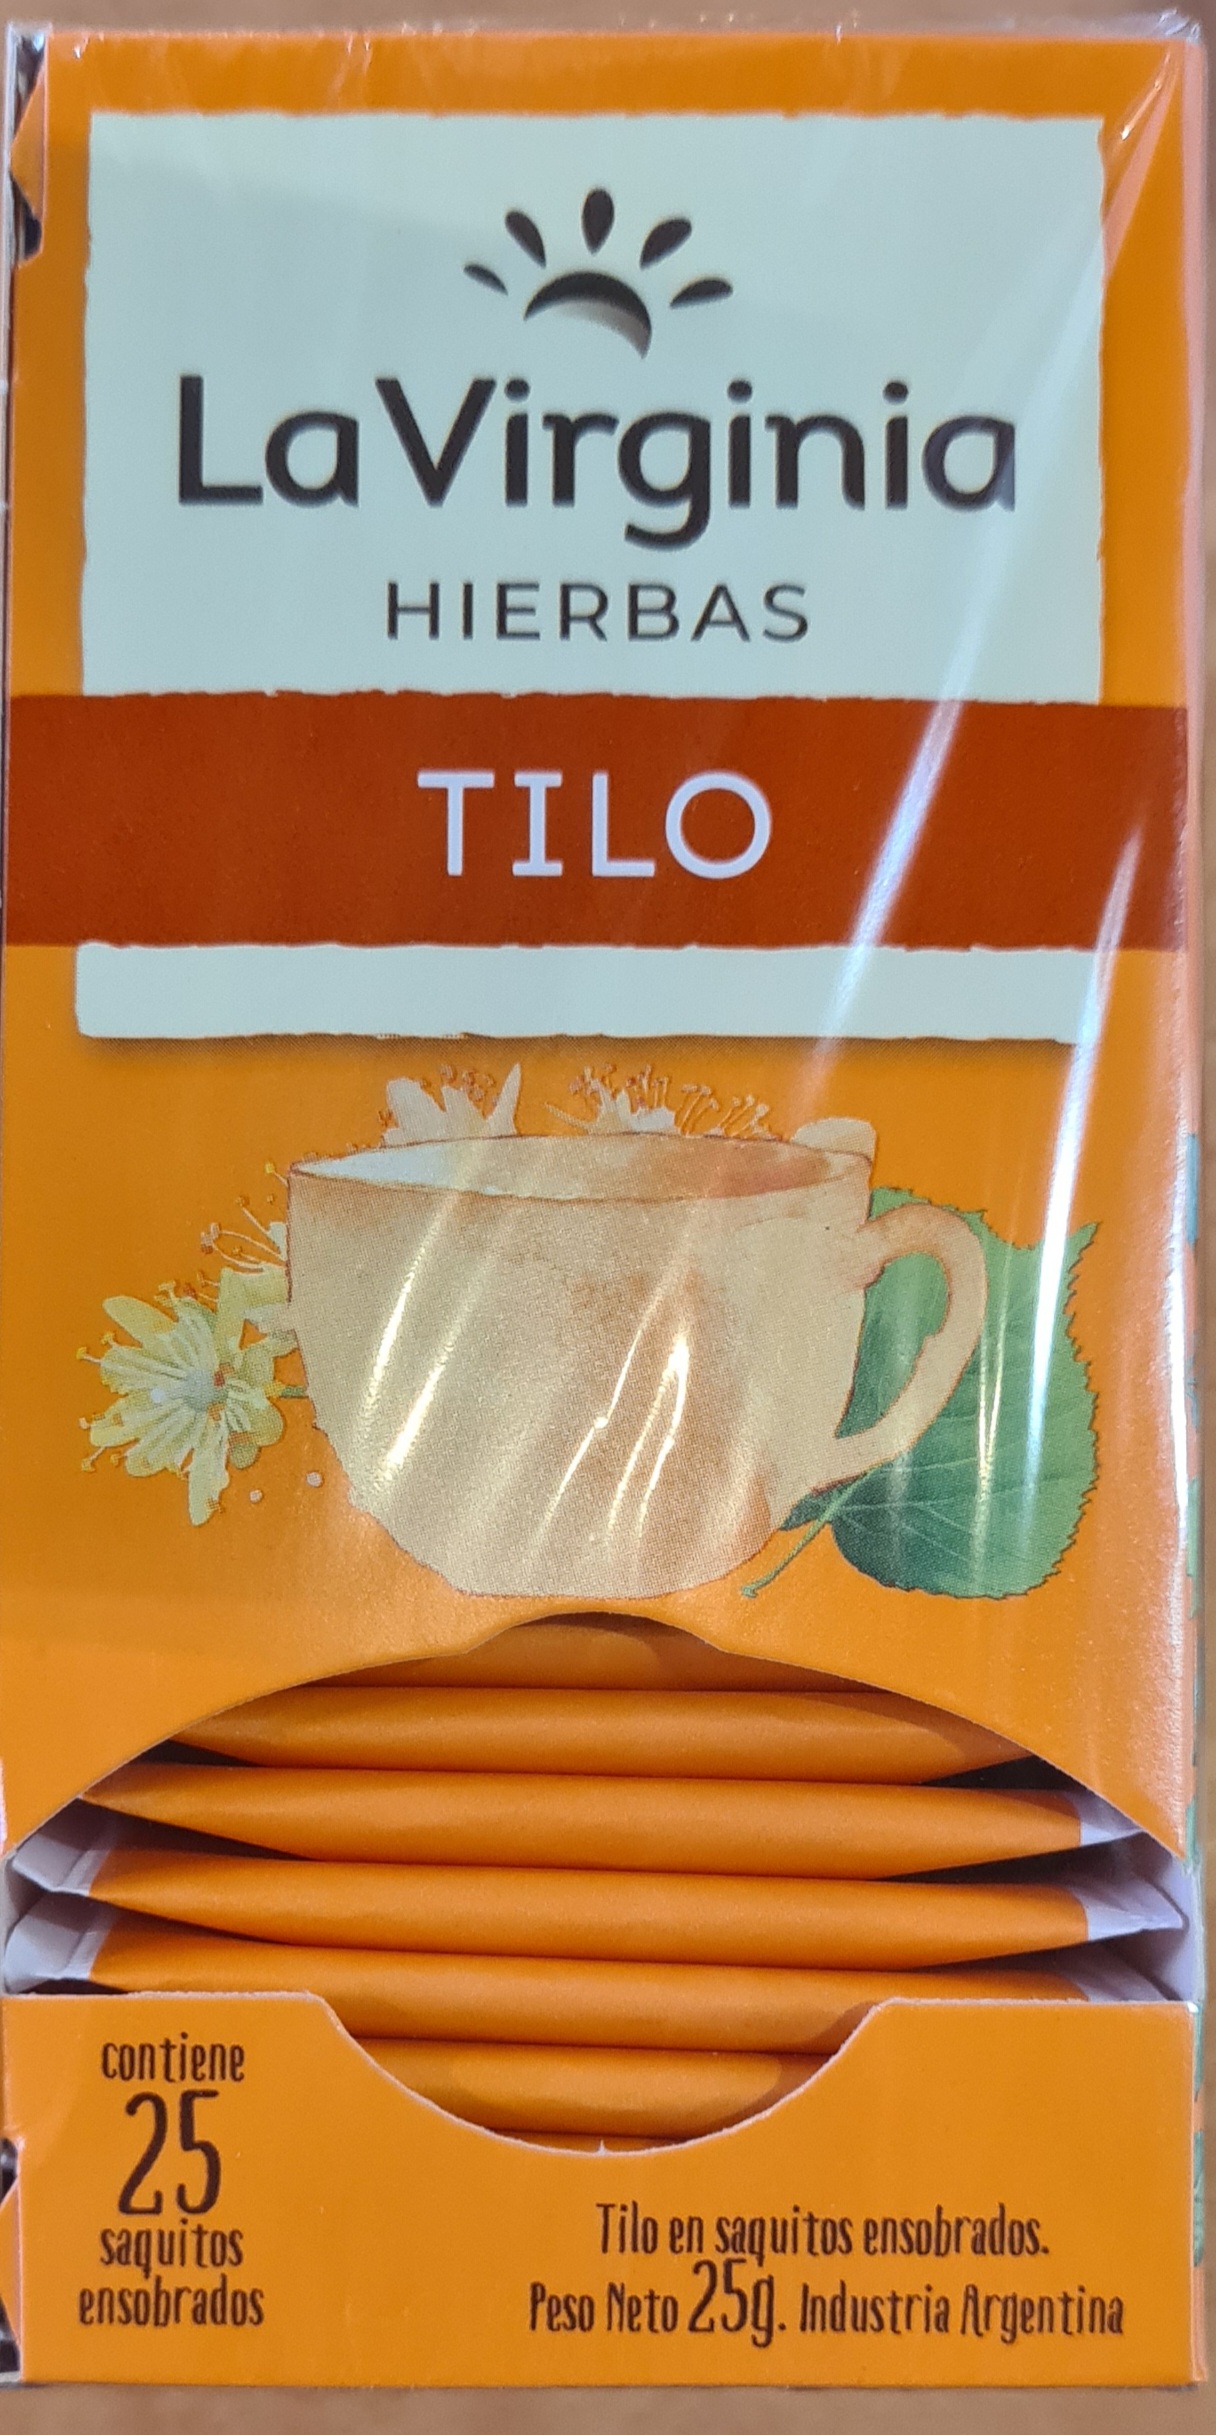 The de Tilo